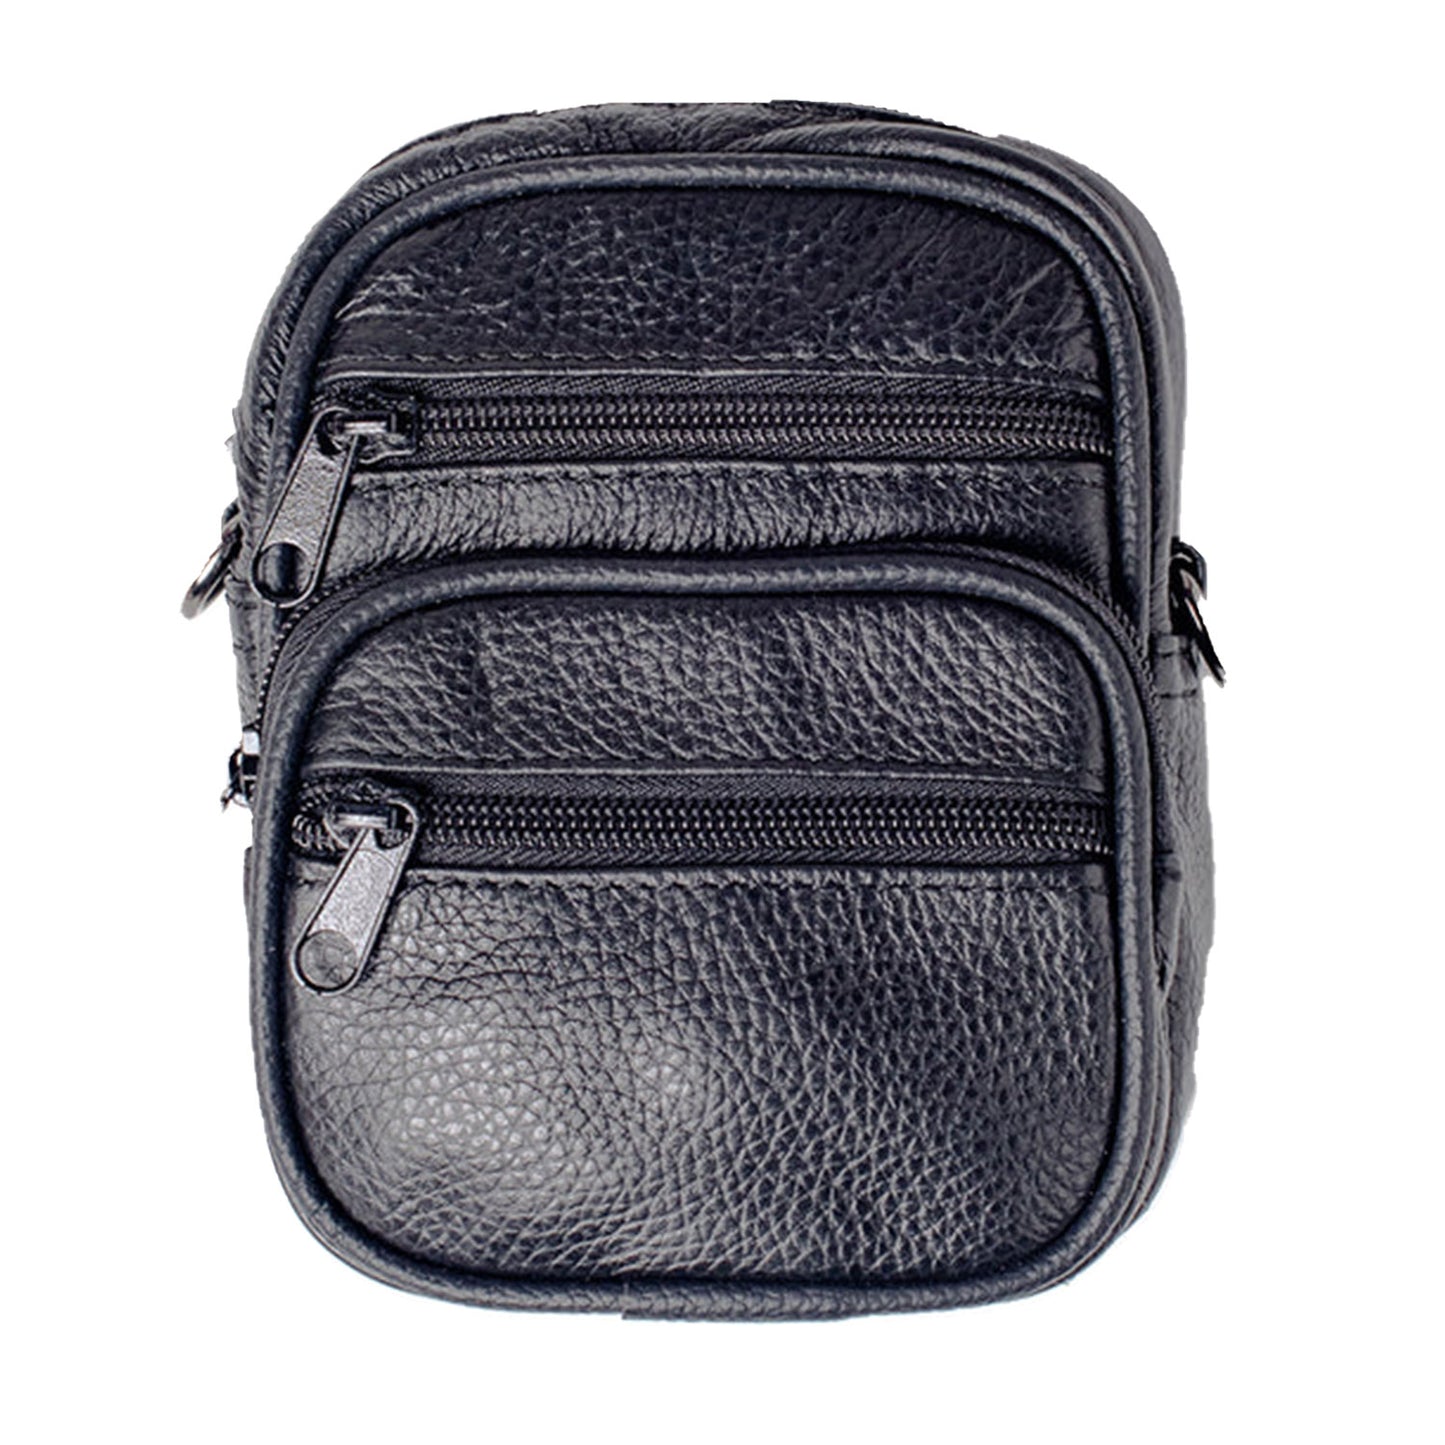 Leather Belt Bag Phone Wallet Purse for Men Loop Case Waist Pack